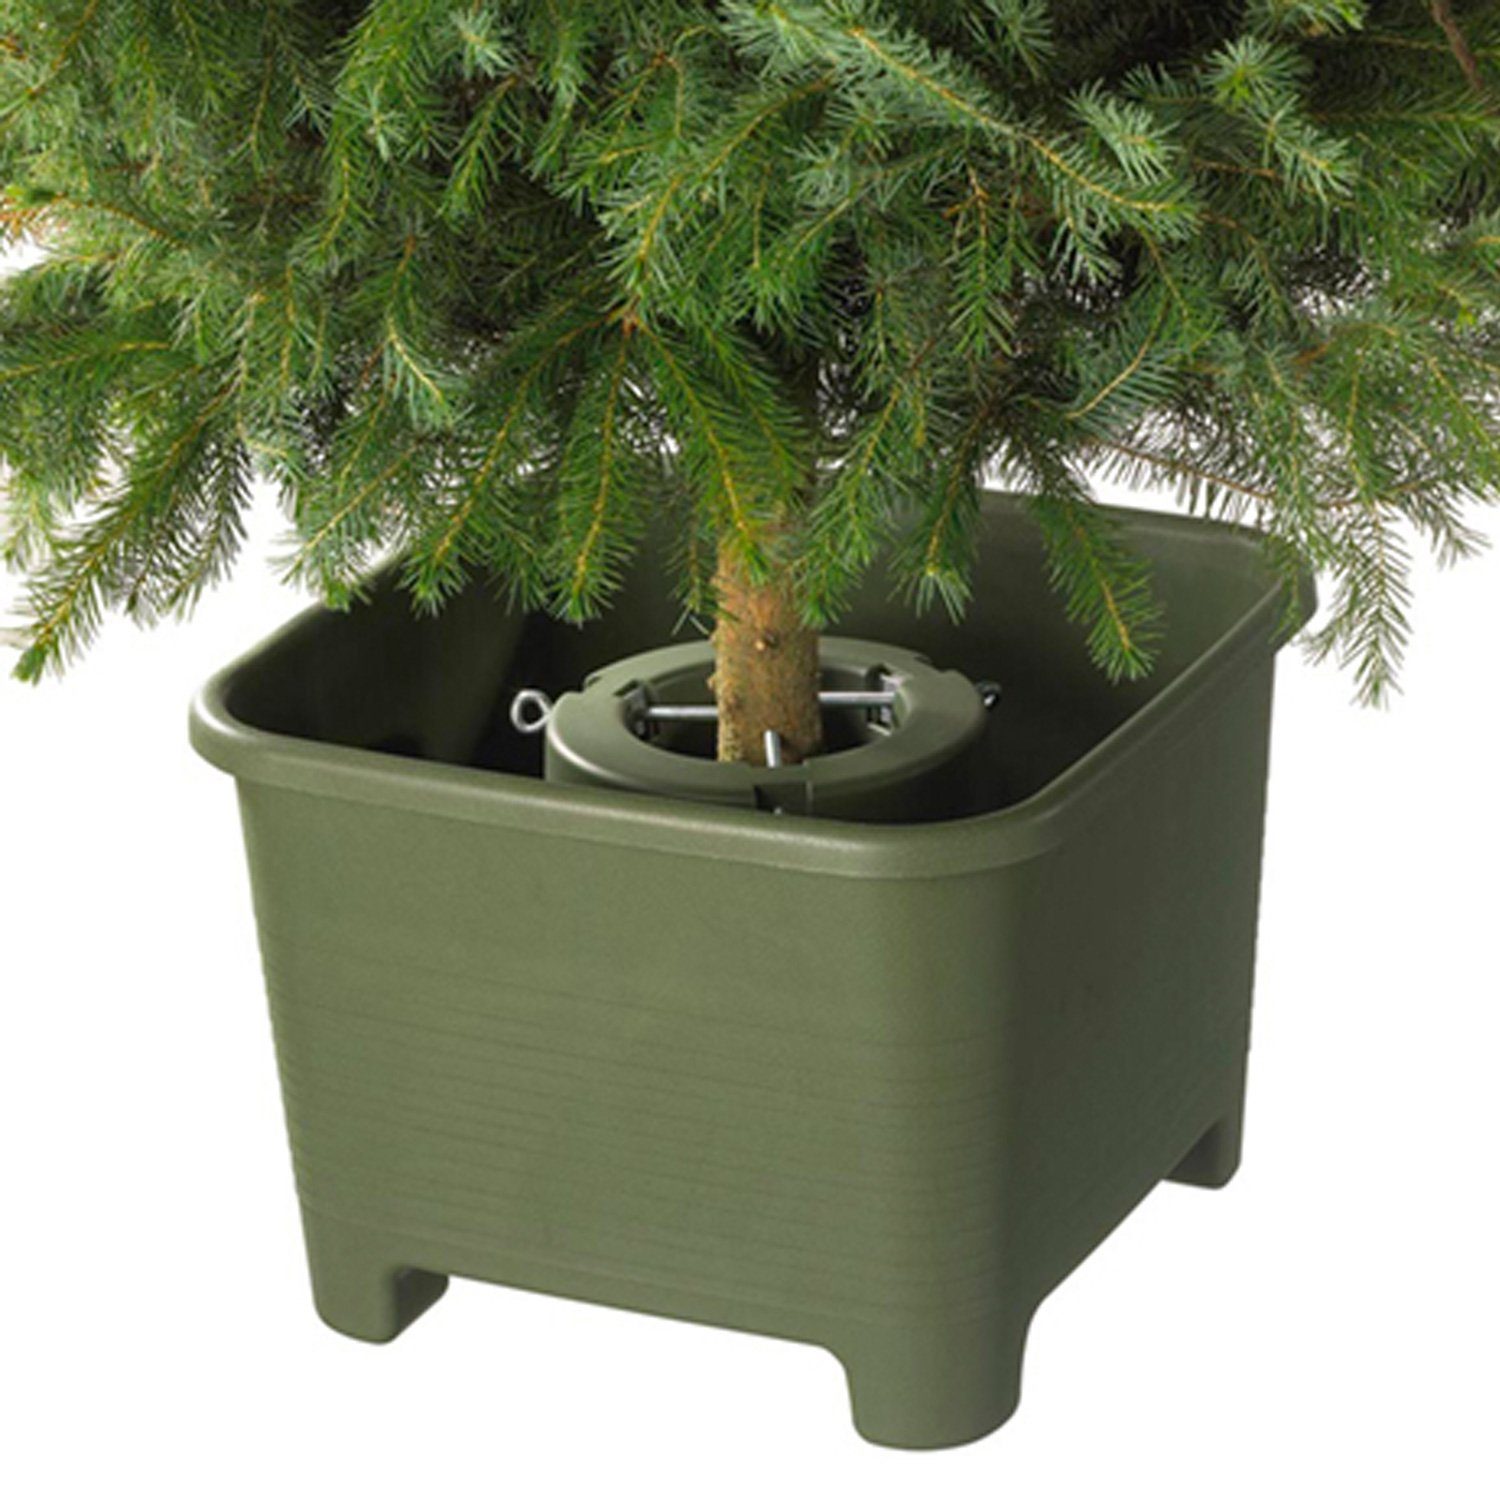 Stämme grün 1-9cm Für Weihnachtsbaumständer 40cm - BOTANIC Sunware - Christbaumständer